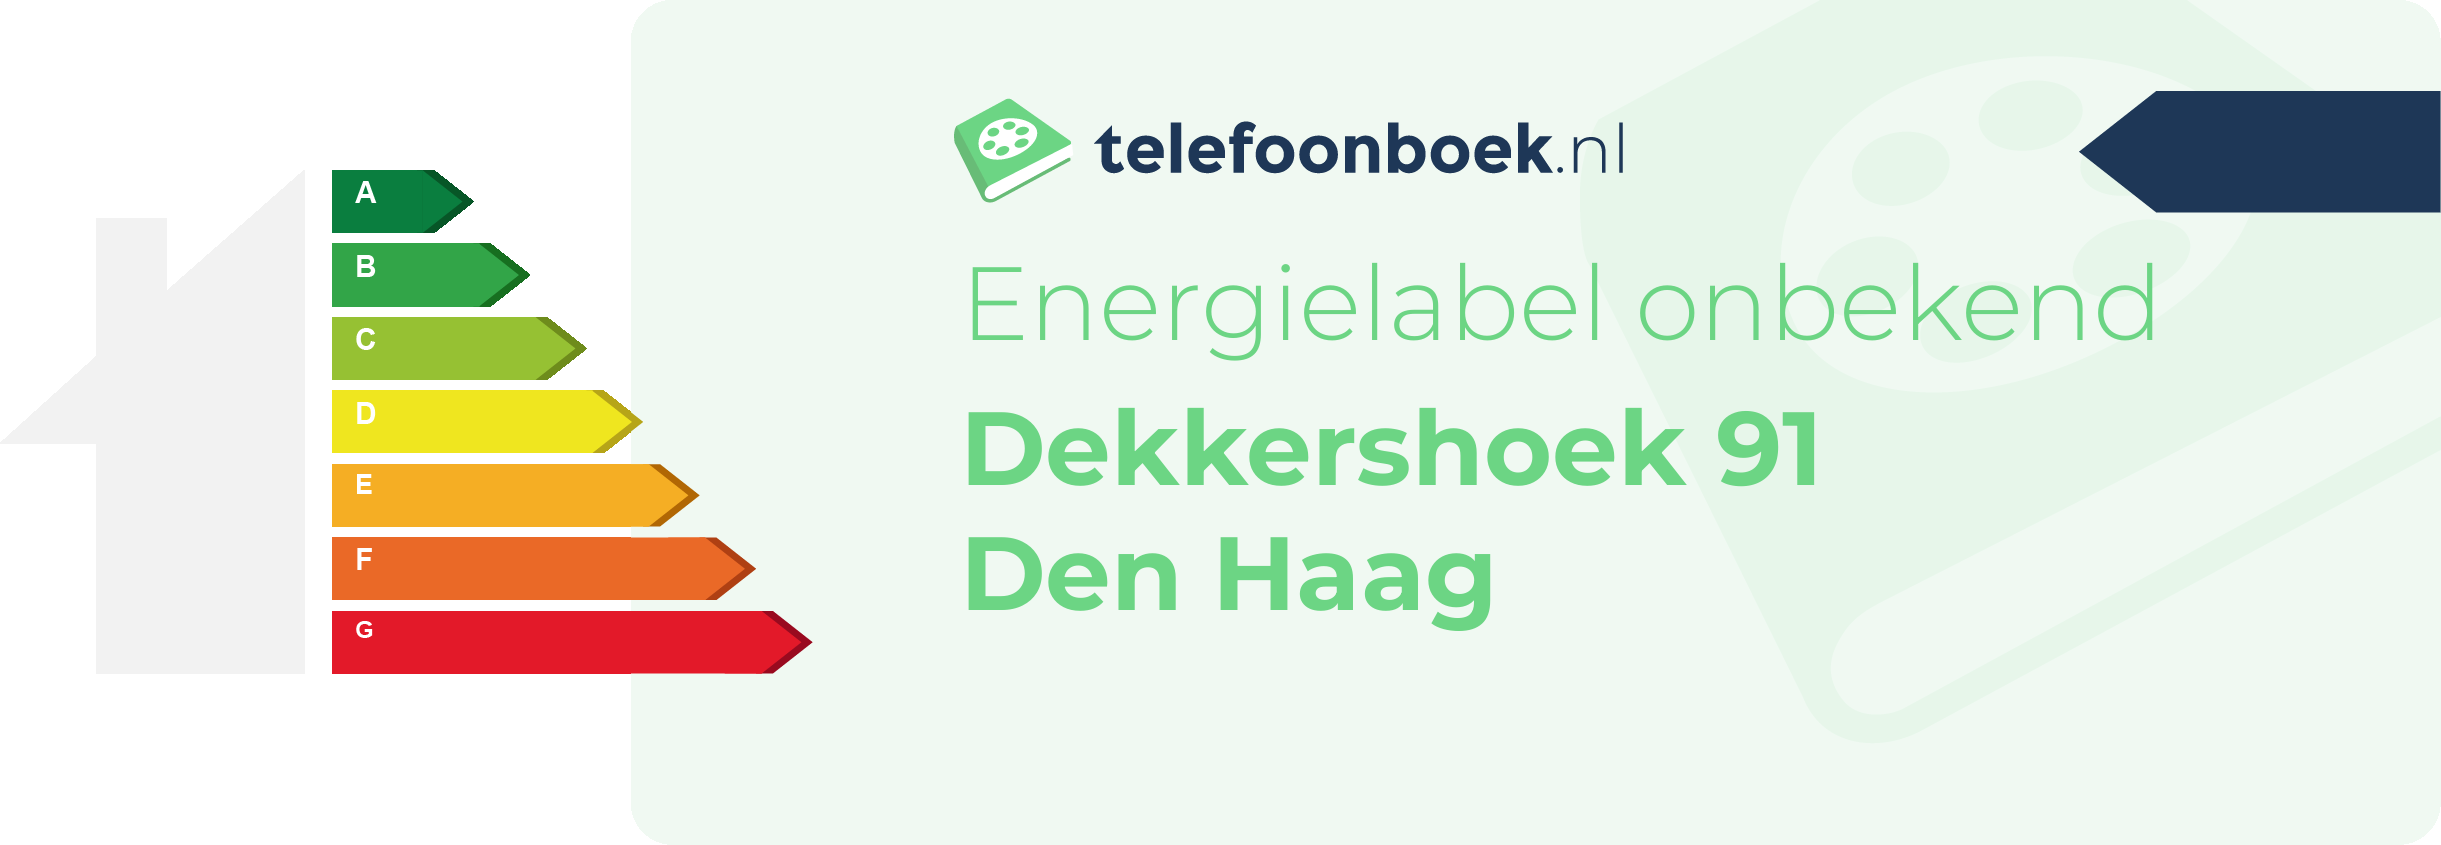 Energielabel Dekkershoek 91 Den Haag